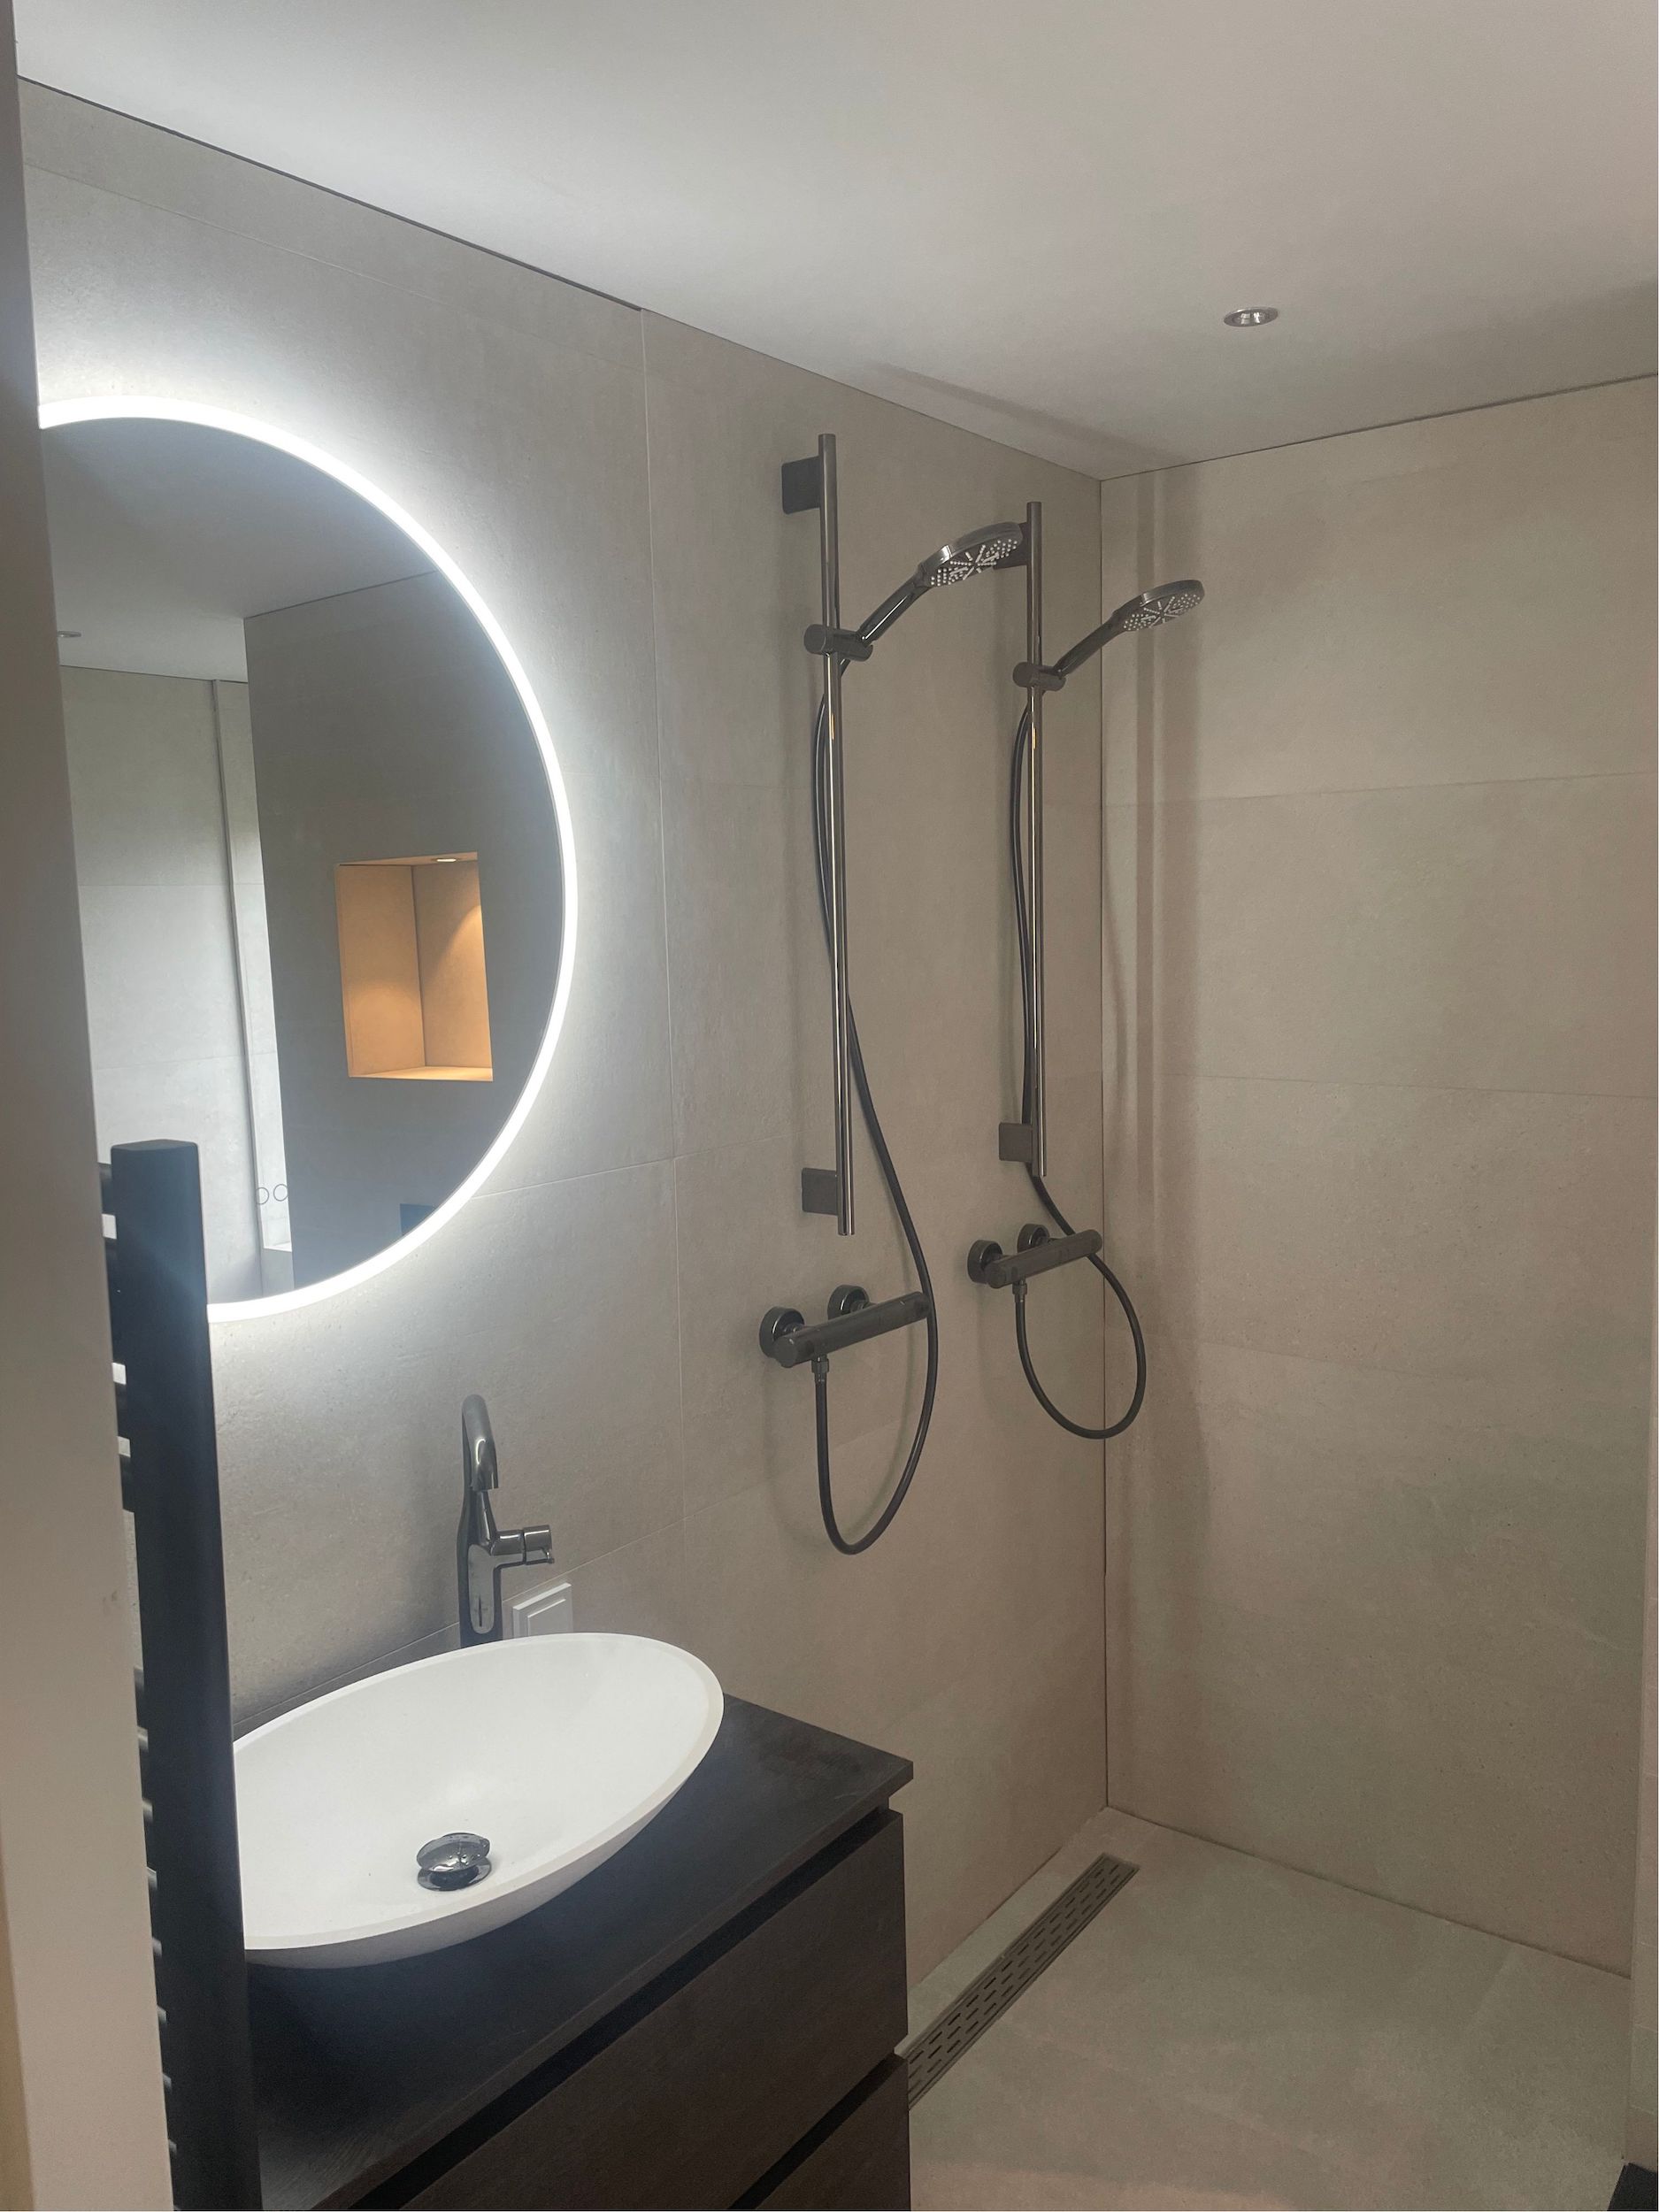 Bizot Installatietechniek – Project badkamer verbouwing 2022 6